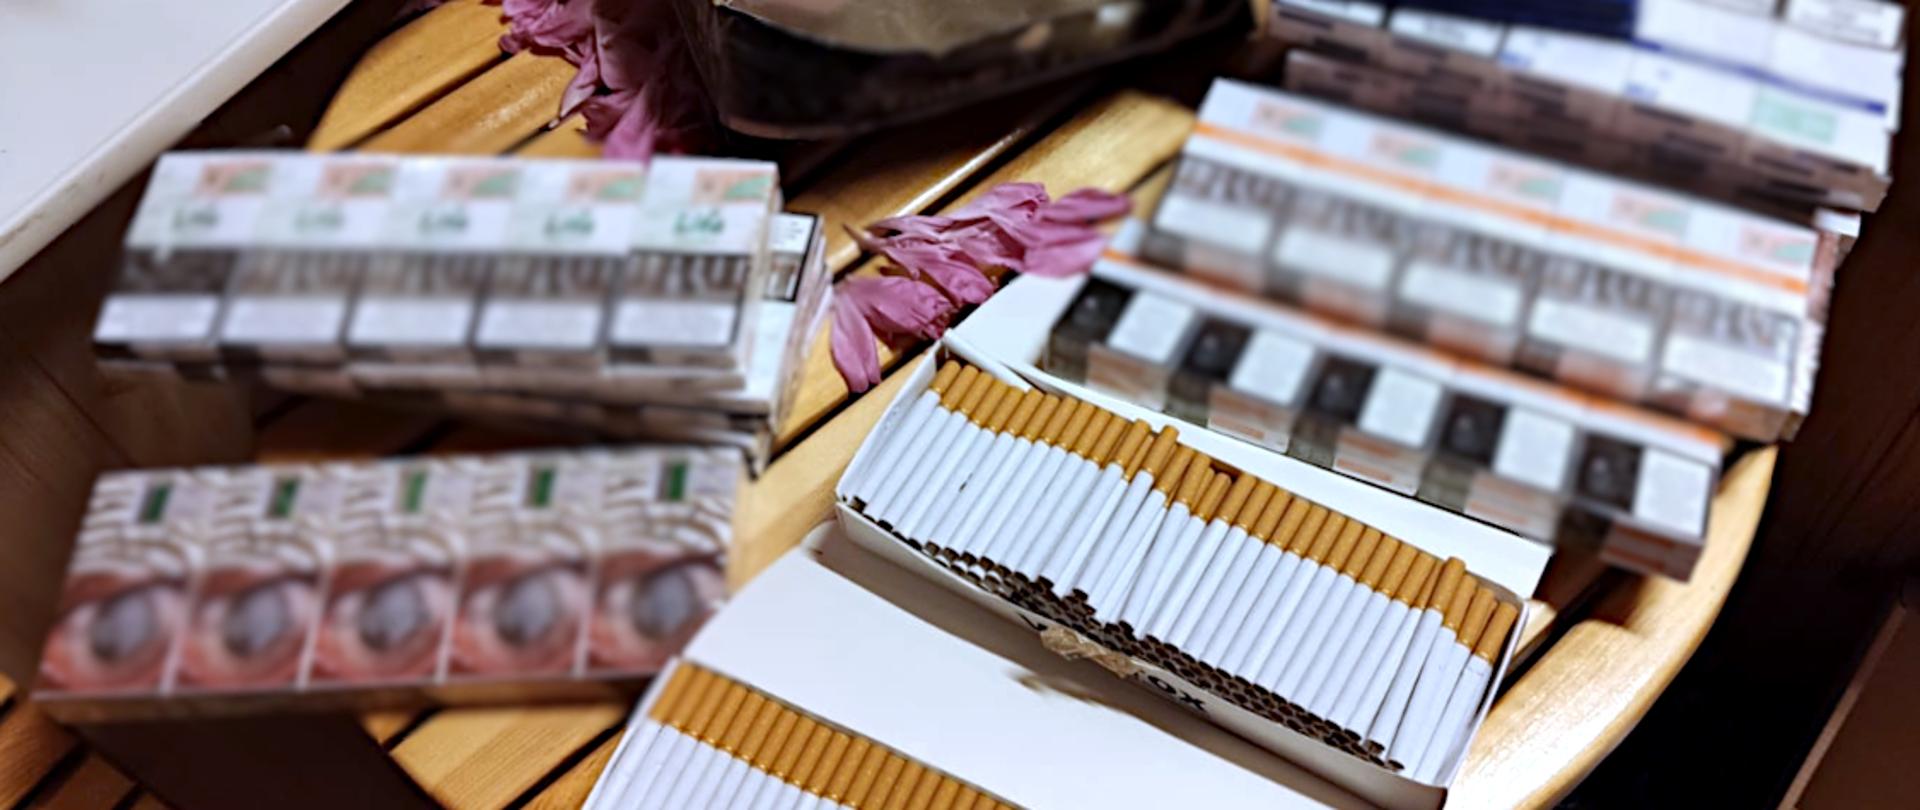 Papierosy i paczki z papierosami na stole.